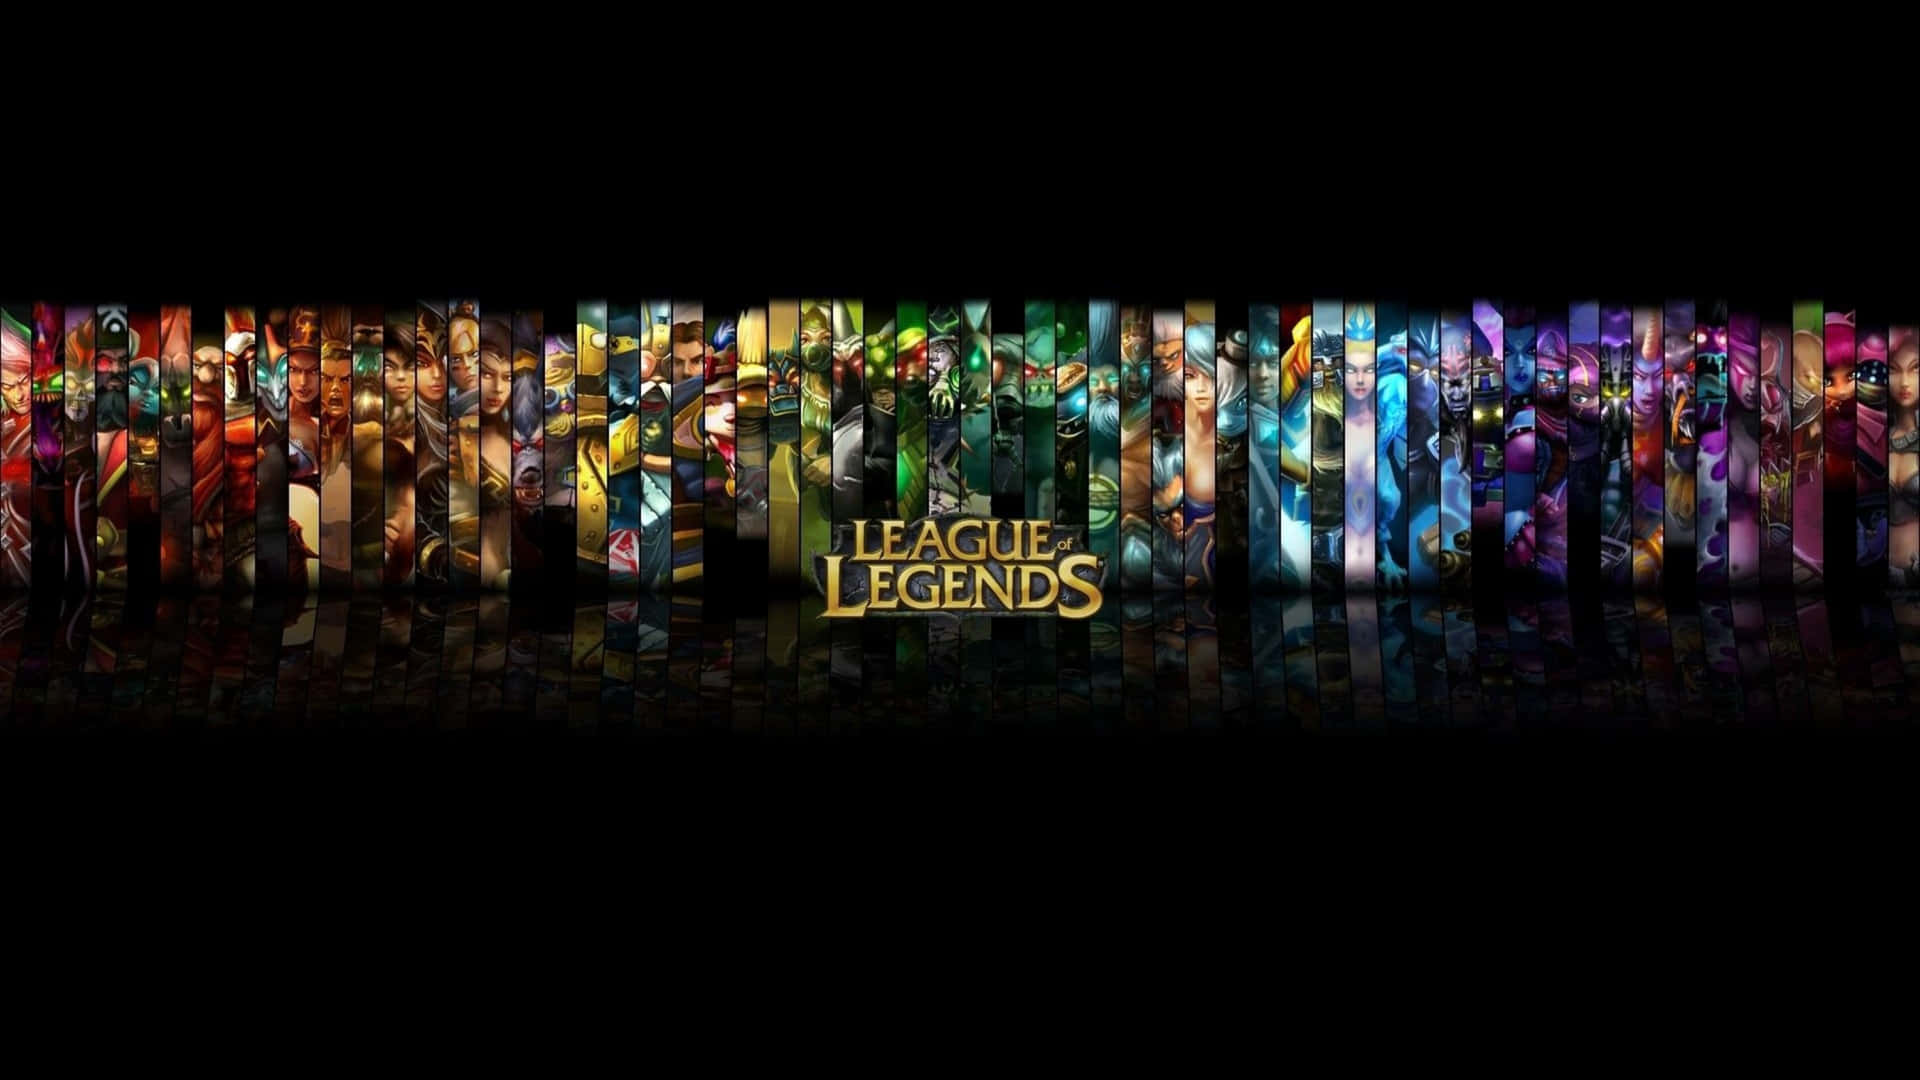 Papéisde Parede De League Of Legends